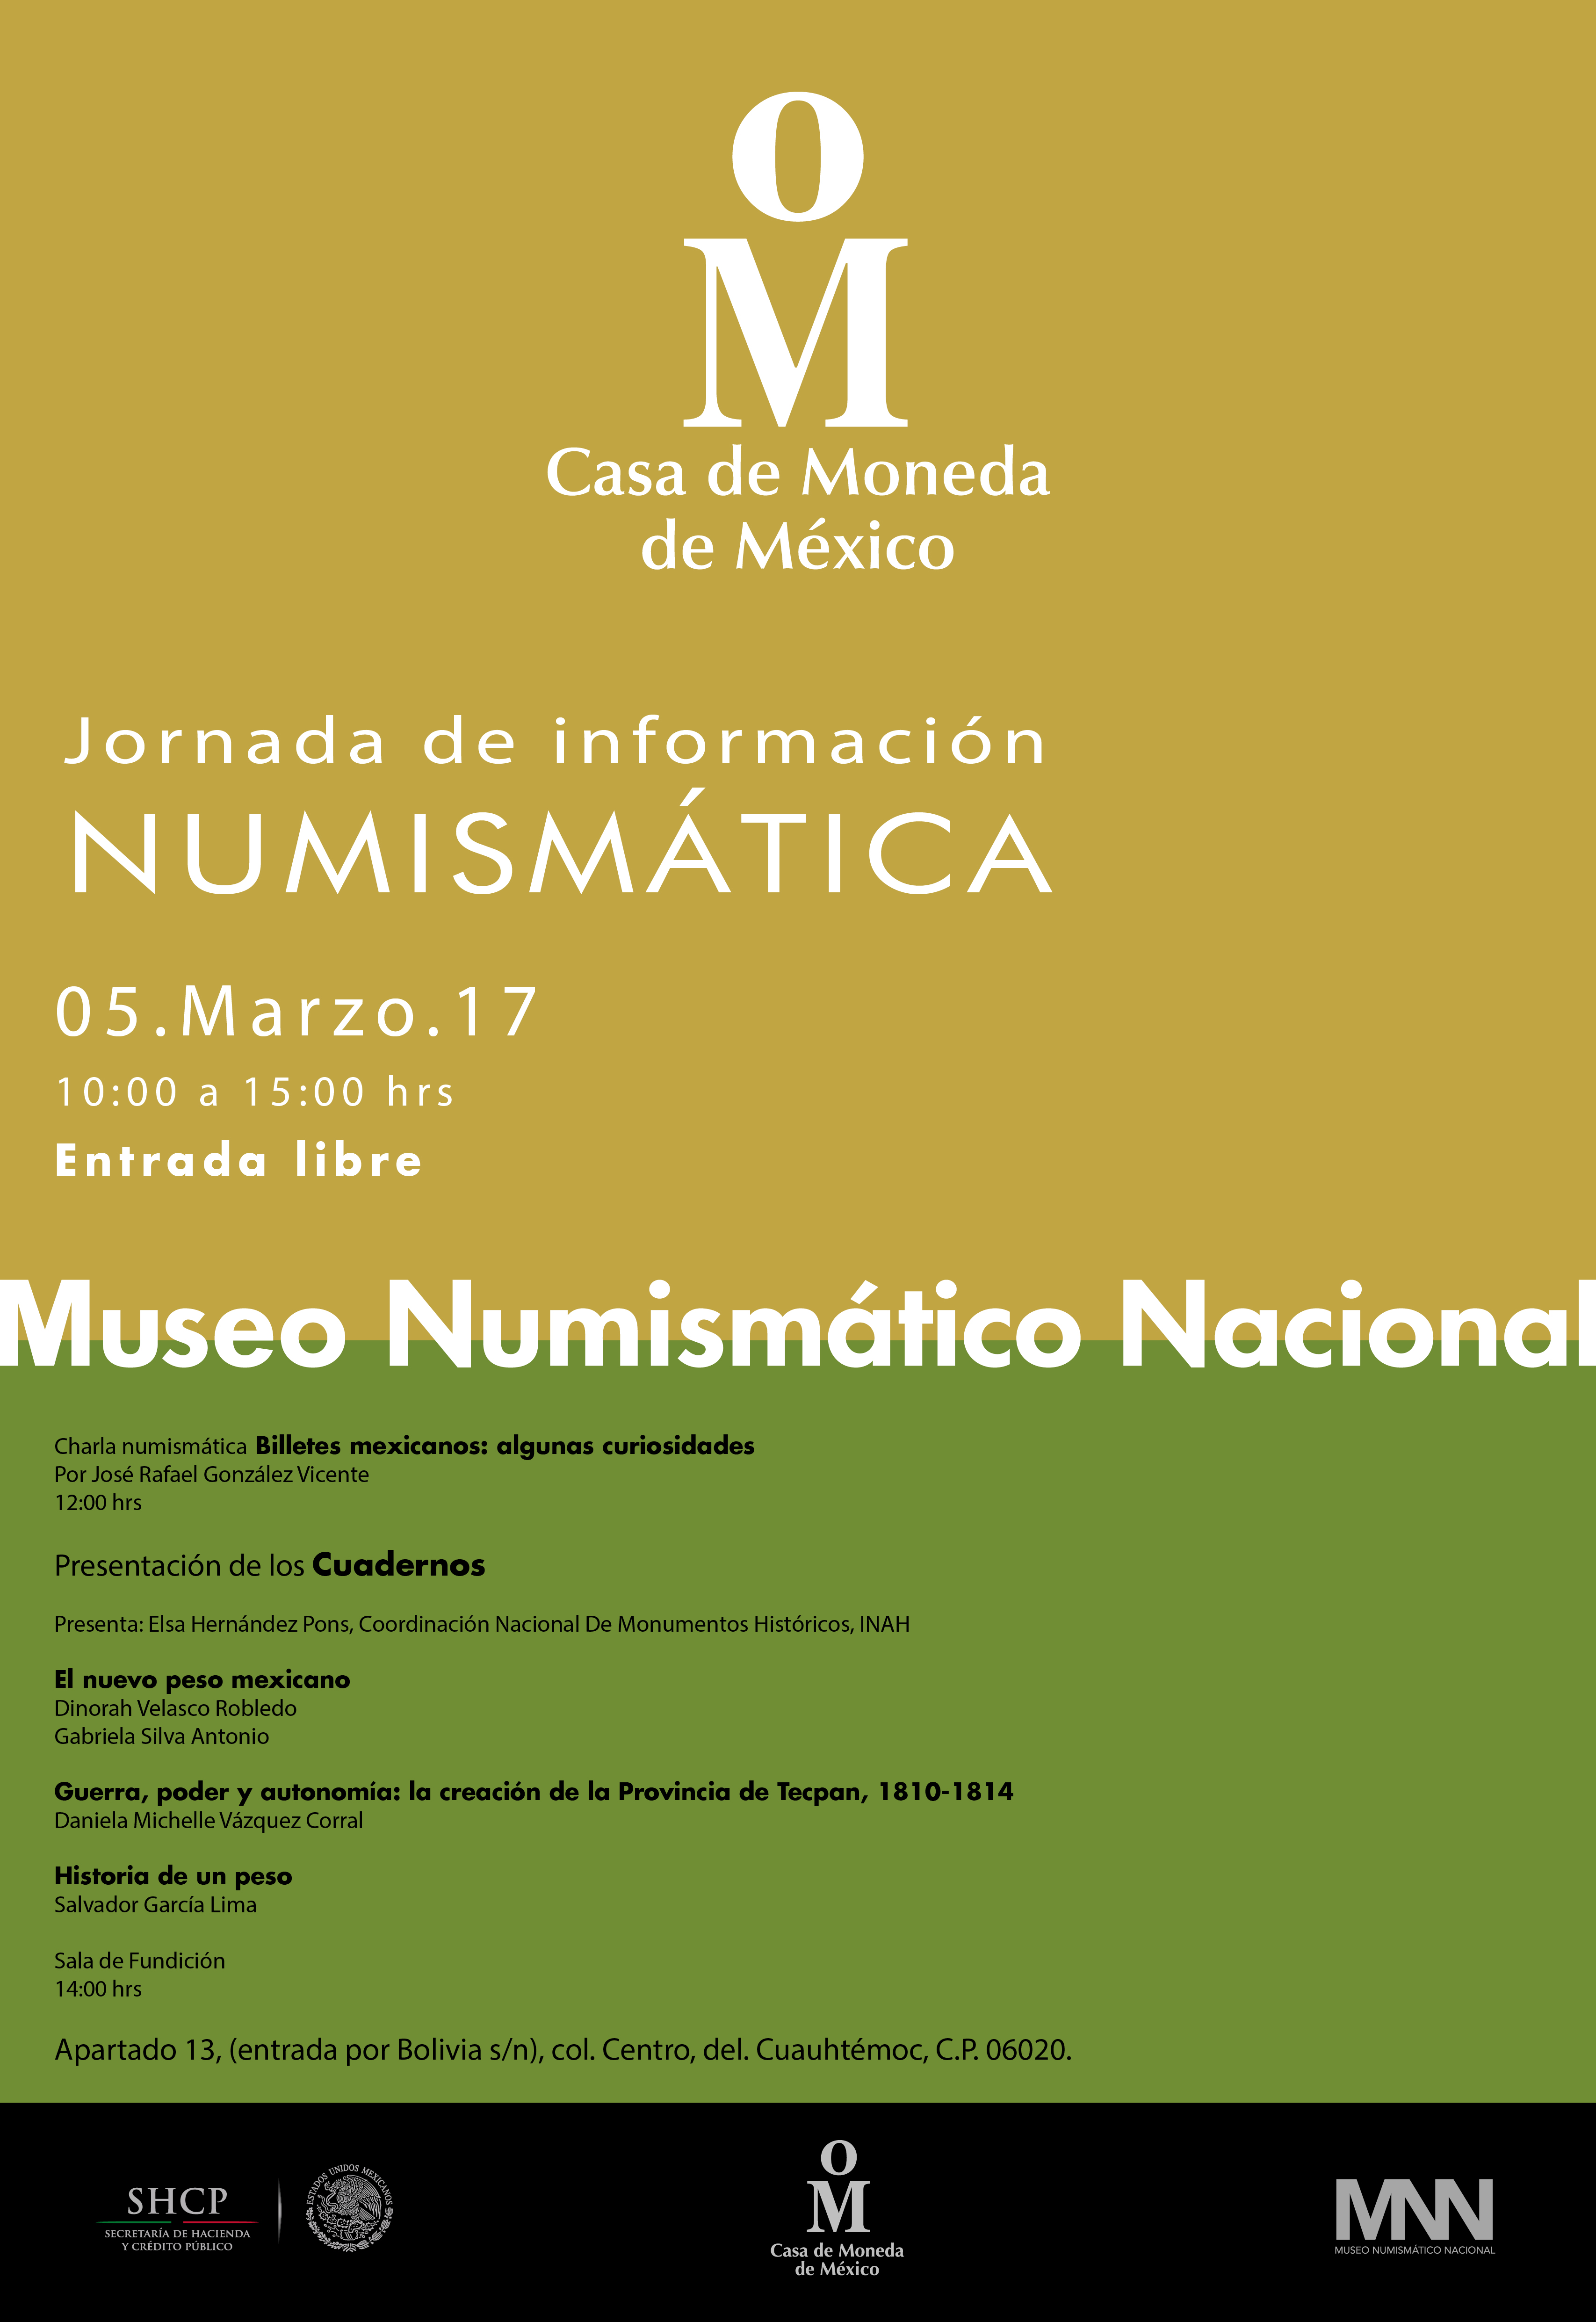 Jornada de Información Numismática de marzo. Presentación de los Cuadernos.